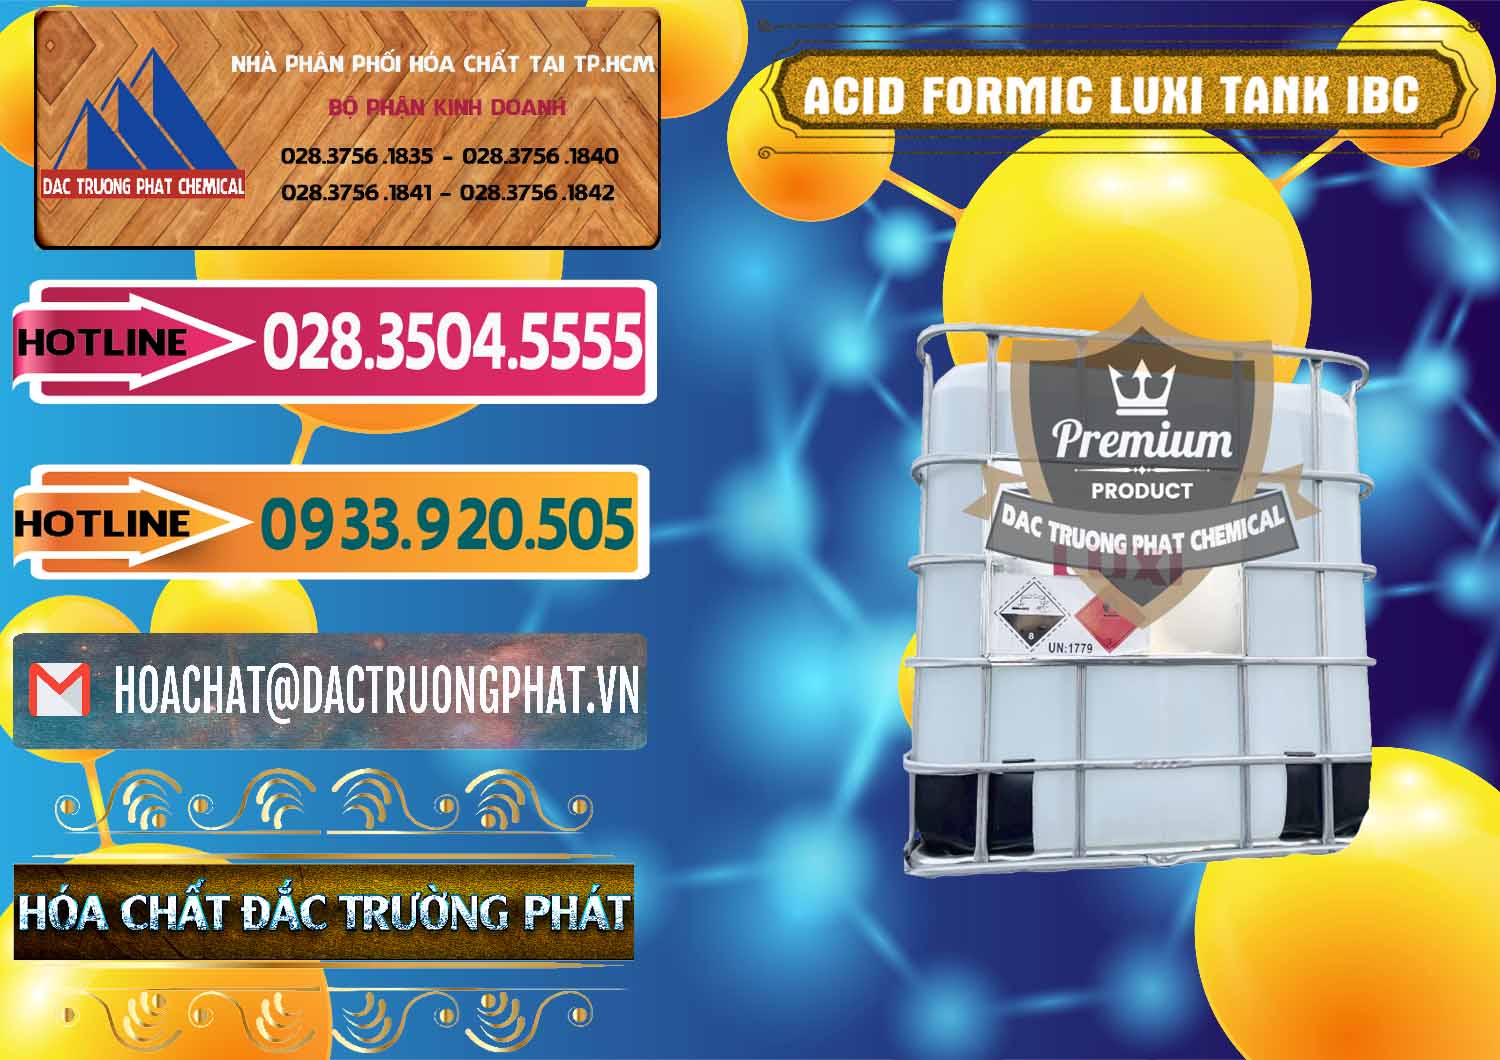 Chuyên cung cấp và bán Acid Formic - Acid Formic Tank - Bồn IBC Luxi Trung Quốc China - 0400 - Chuyên phân phối & cung ứng hóa chất tại TP.HCM - dactruongphat.vn